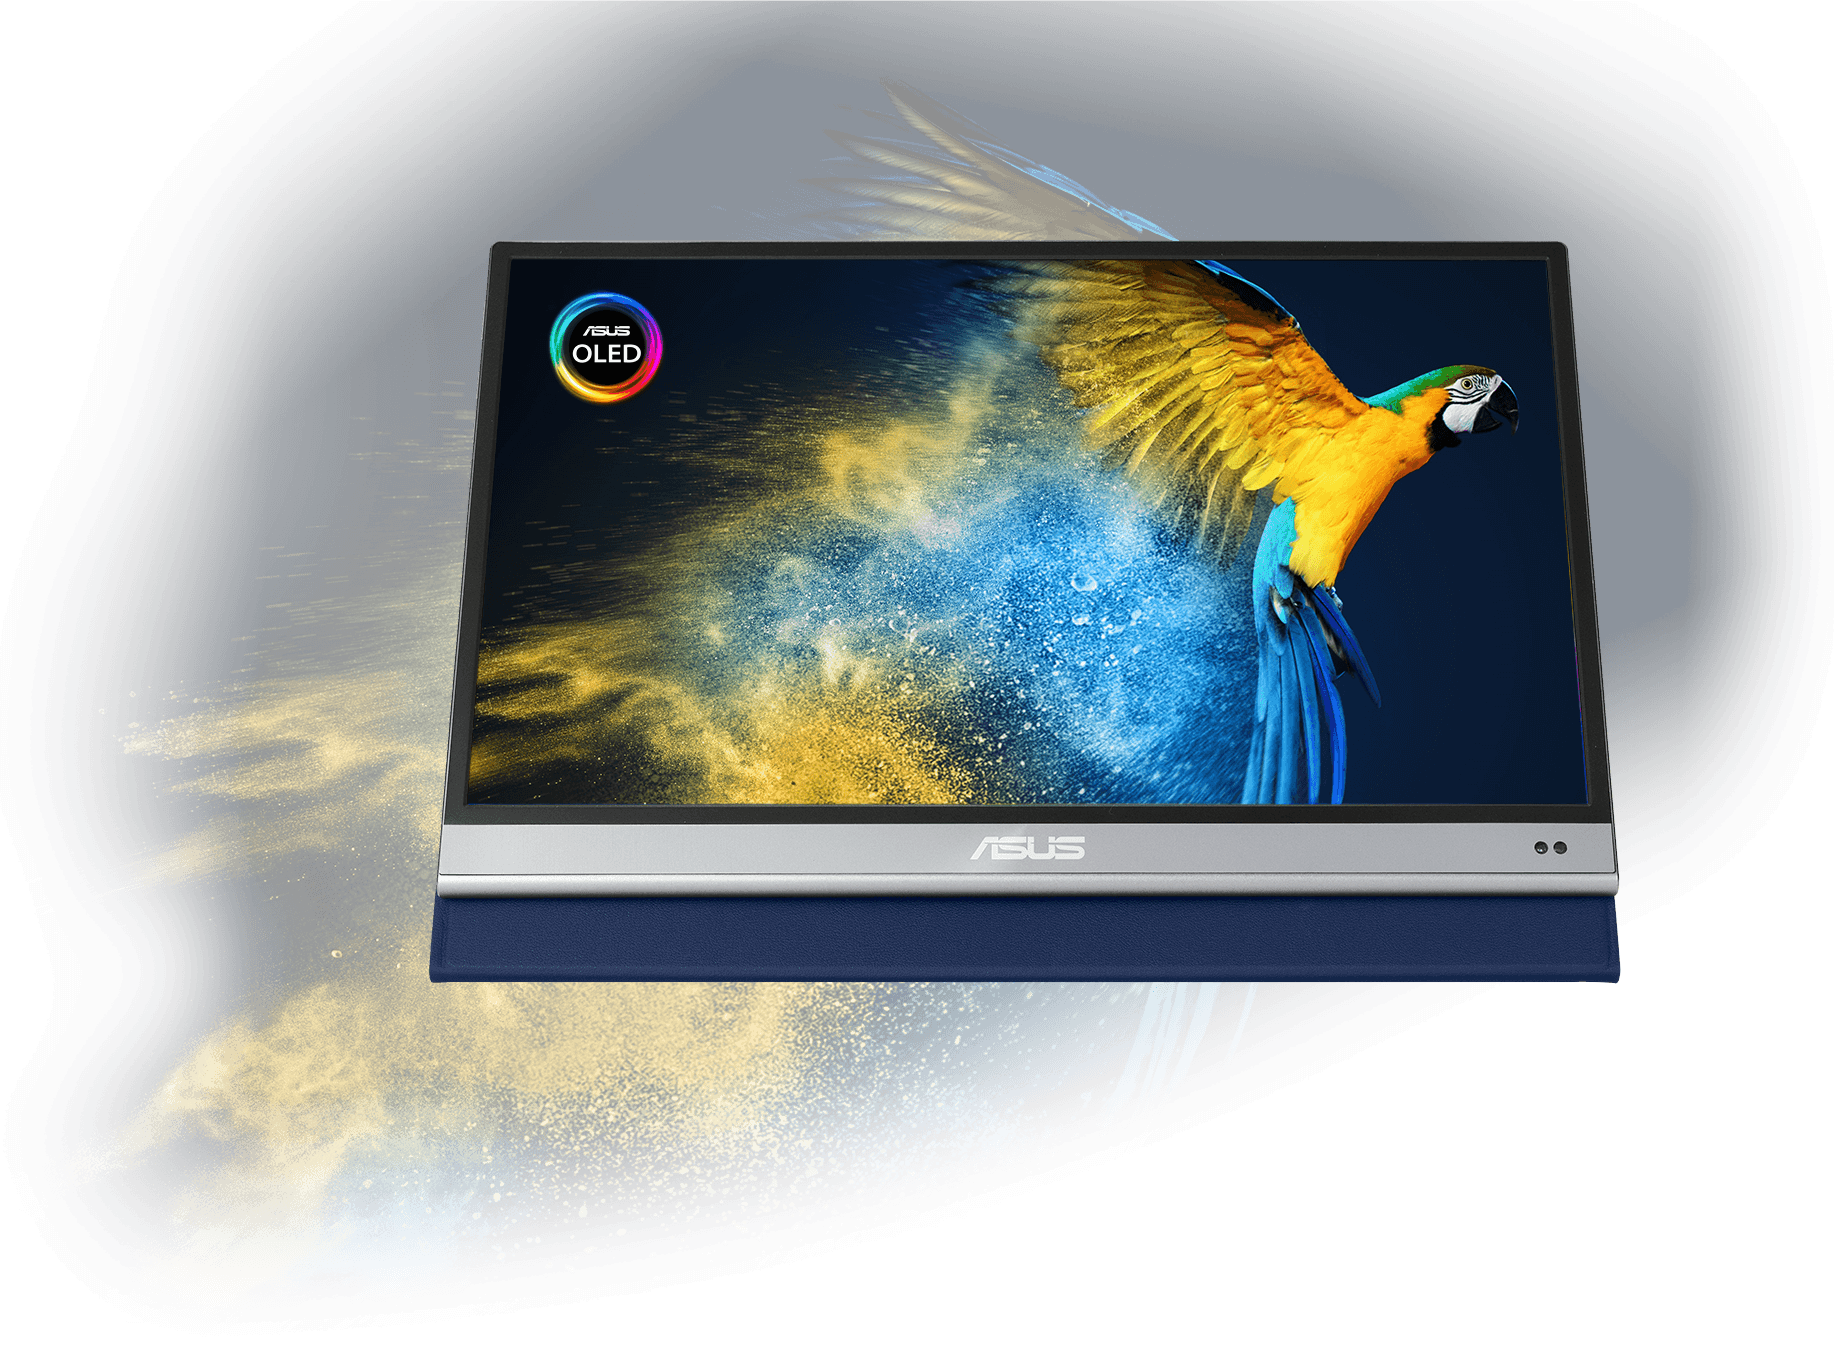 De ZenScreen OLED MQ13AH met een beeld van een papegaai om de levensechte kleurprestaties van het scherm te laten zien